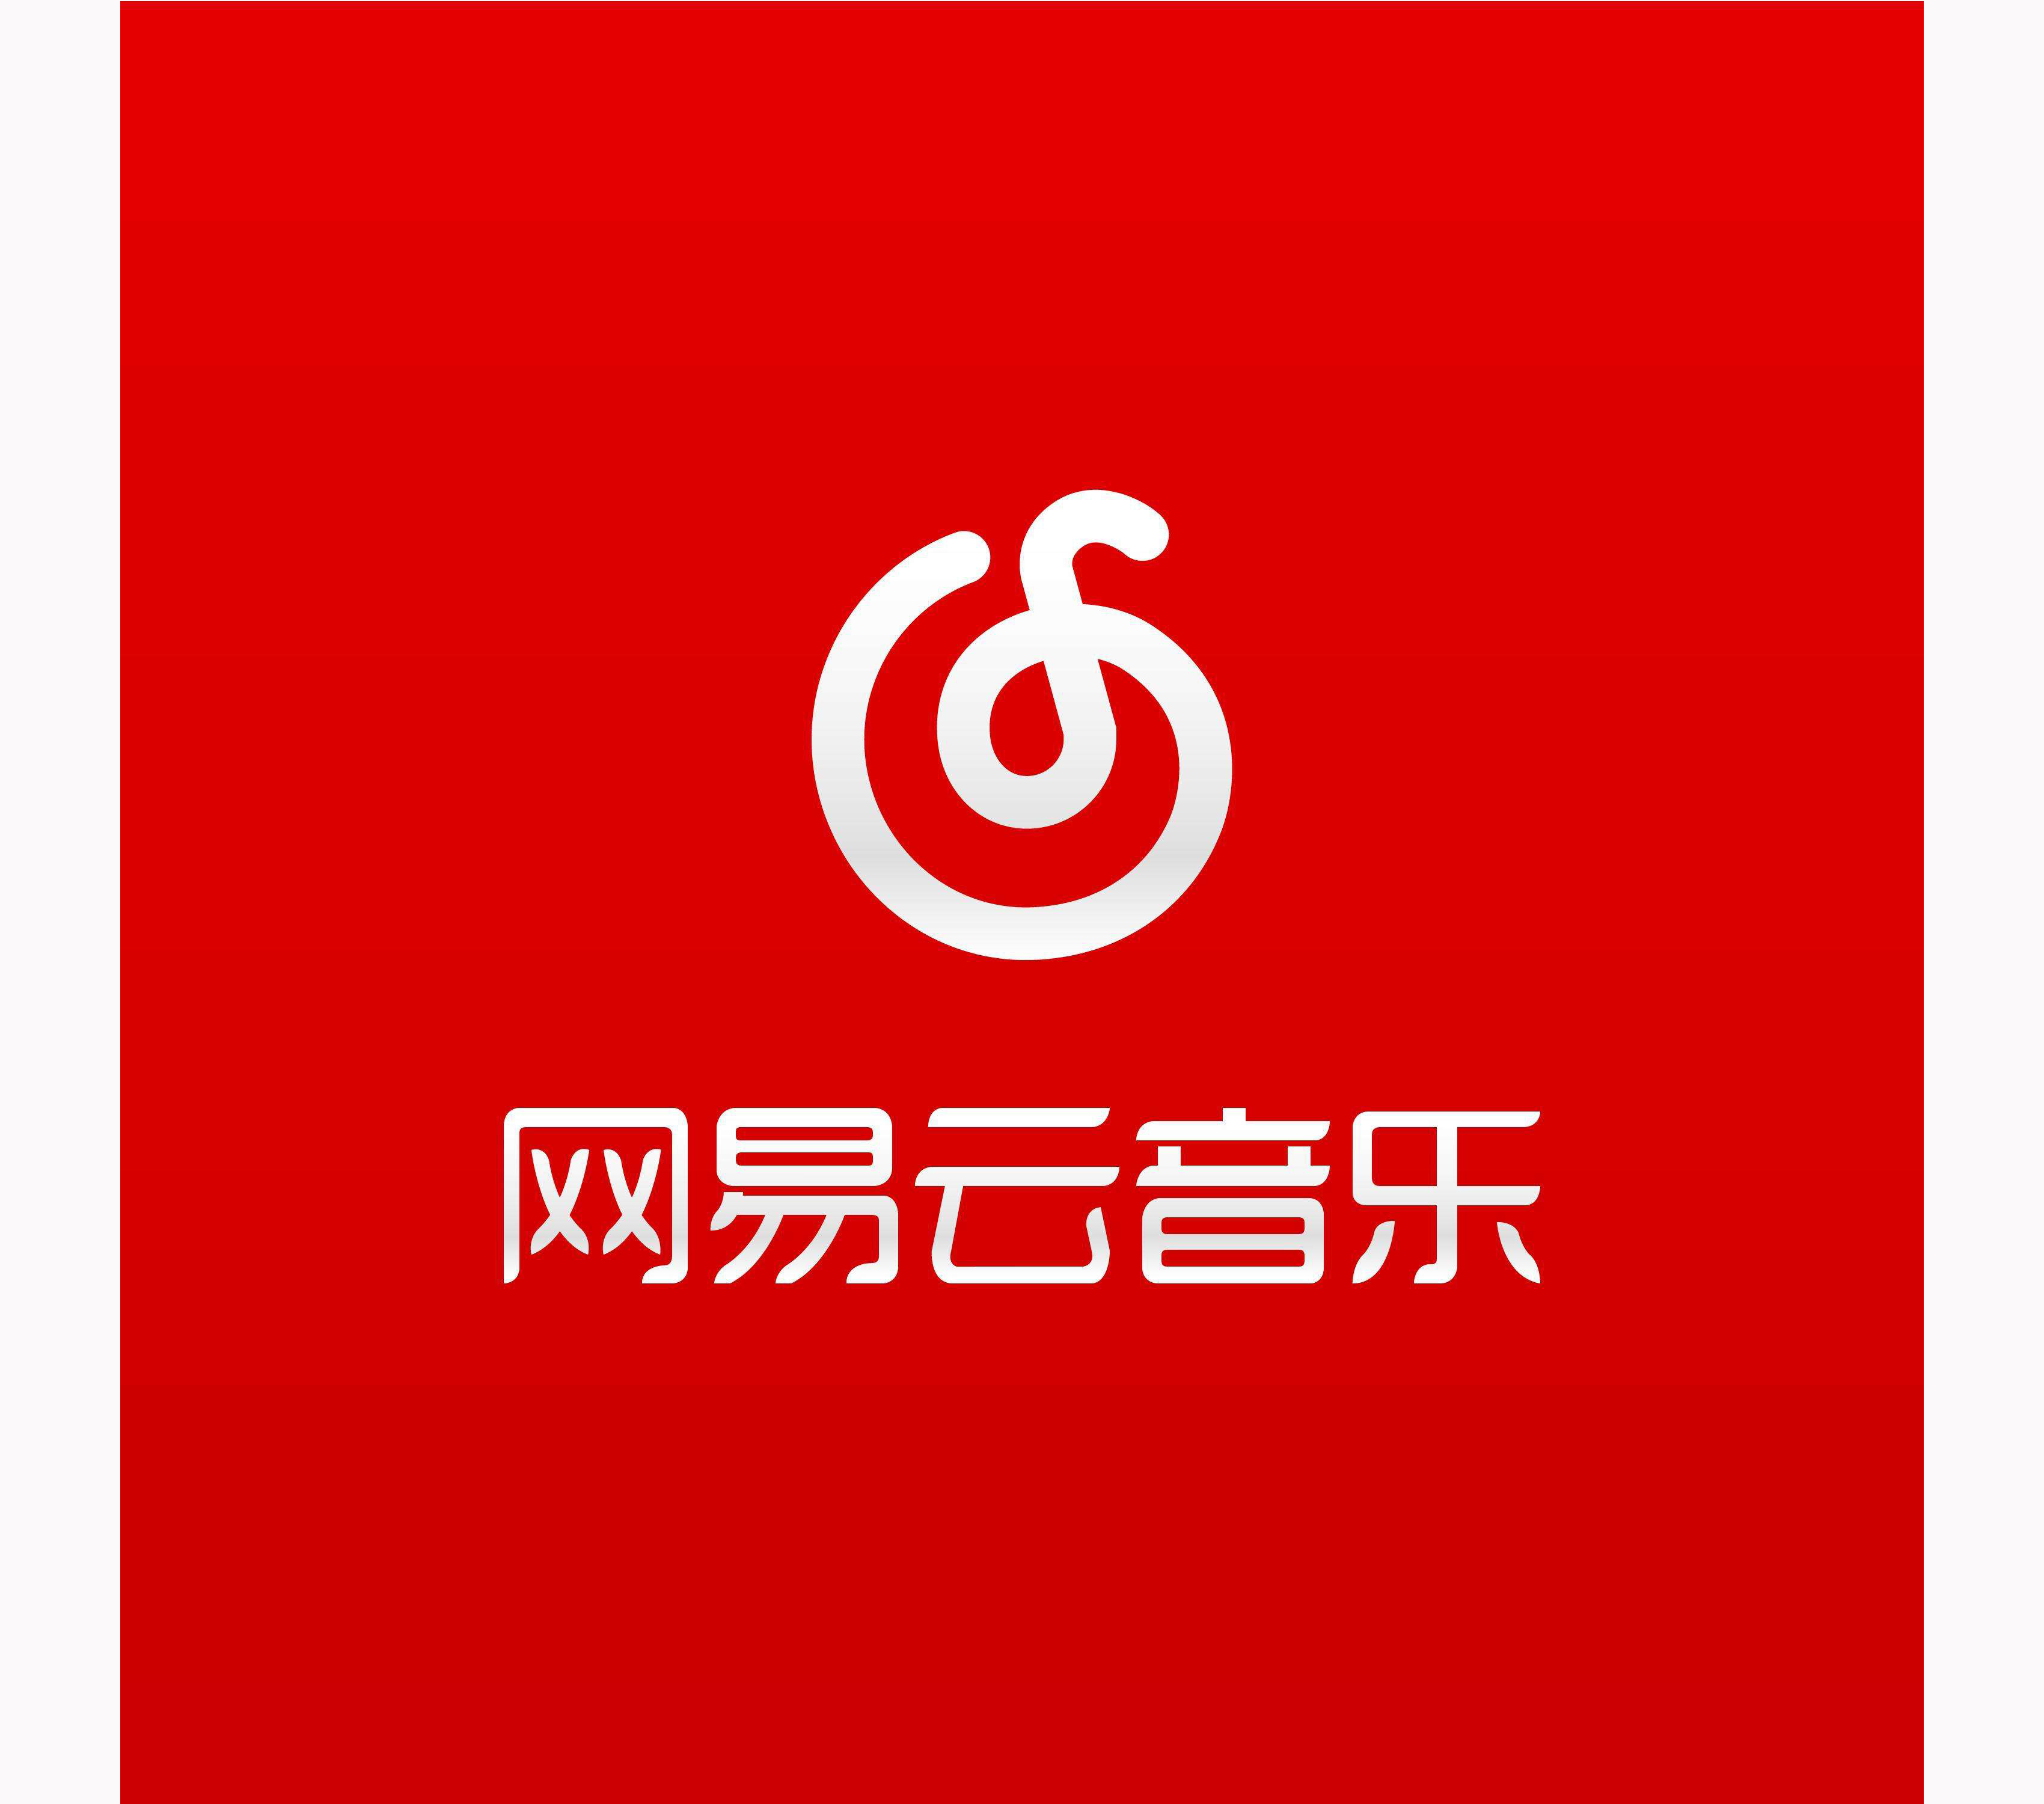 网易云音乐logo 图标图片